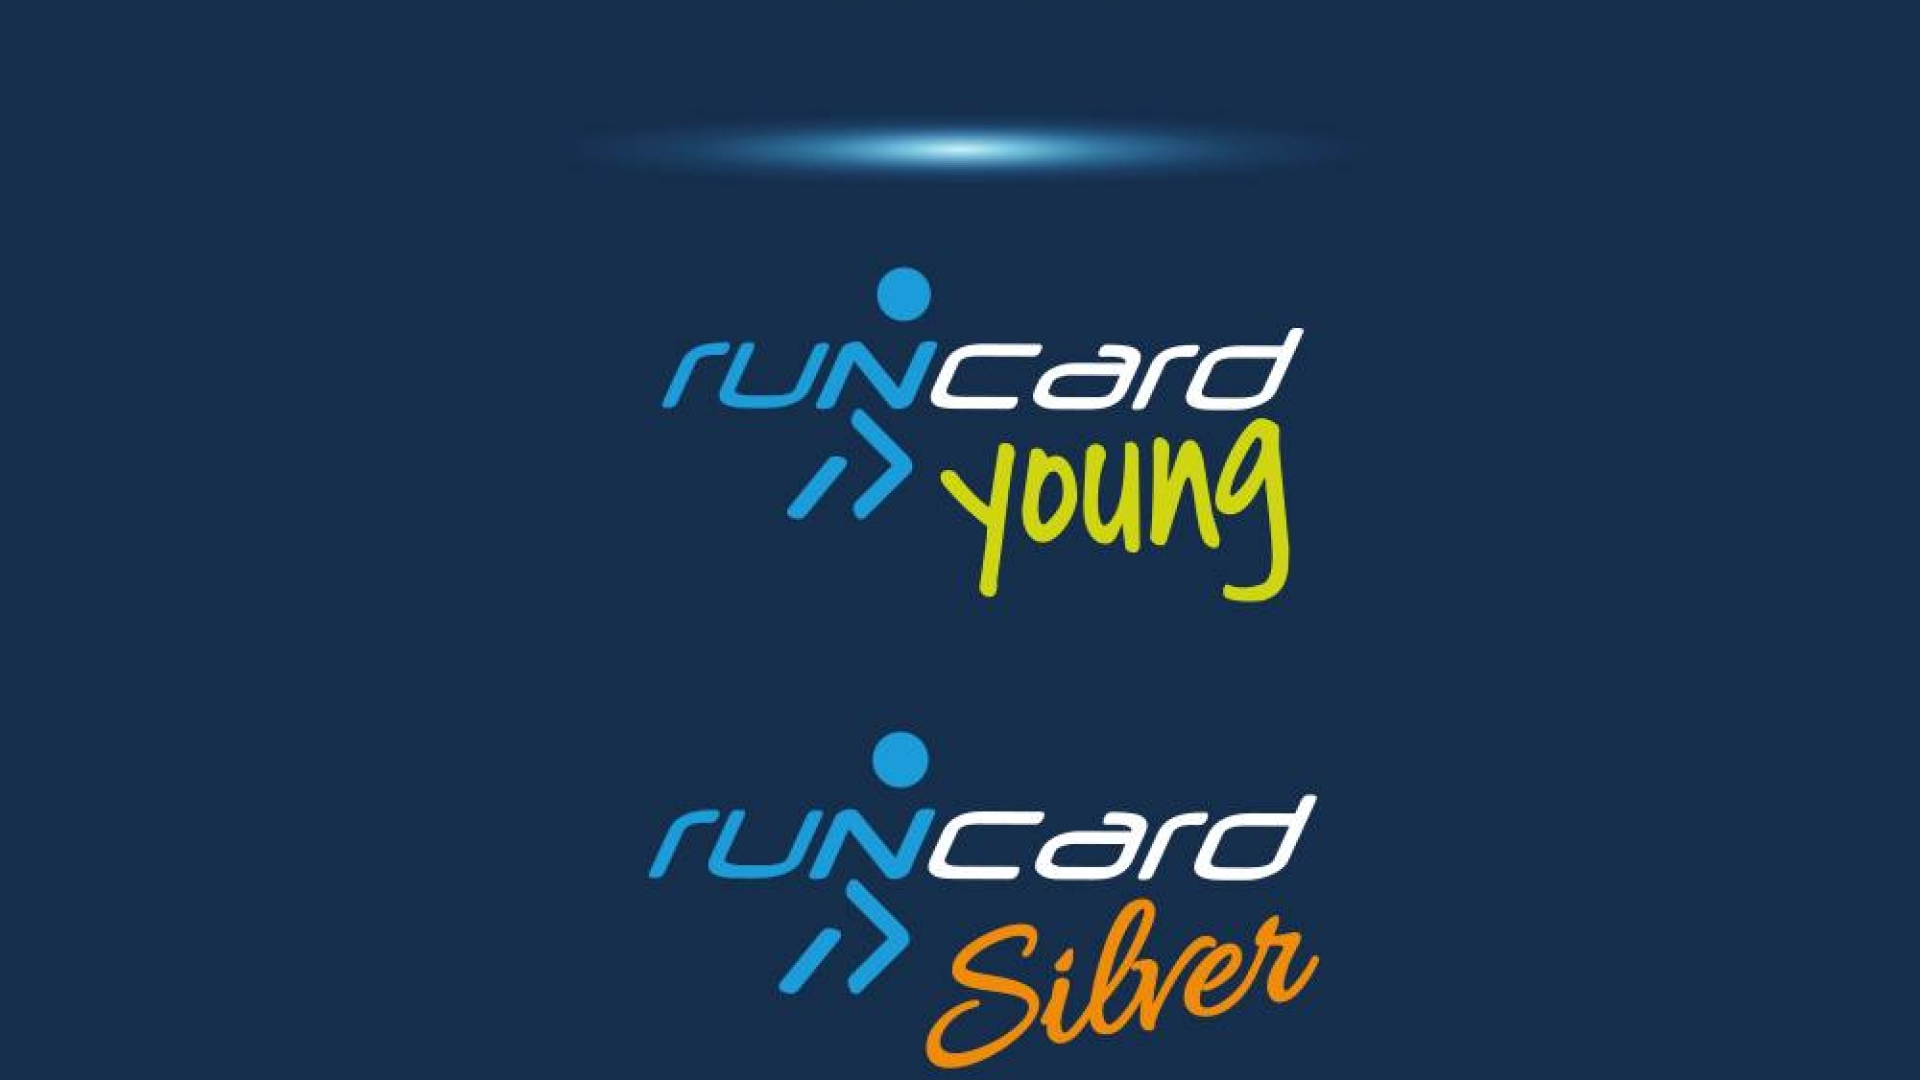 Run Card Young e Silver: Nota del 7 Aprile